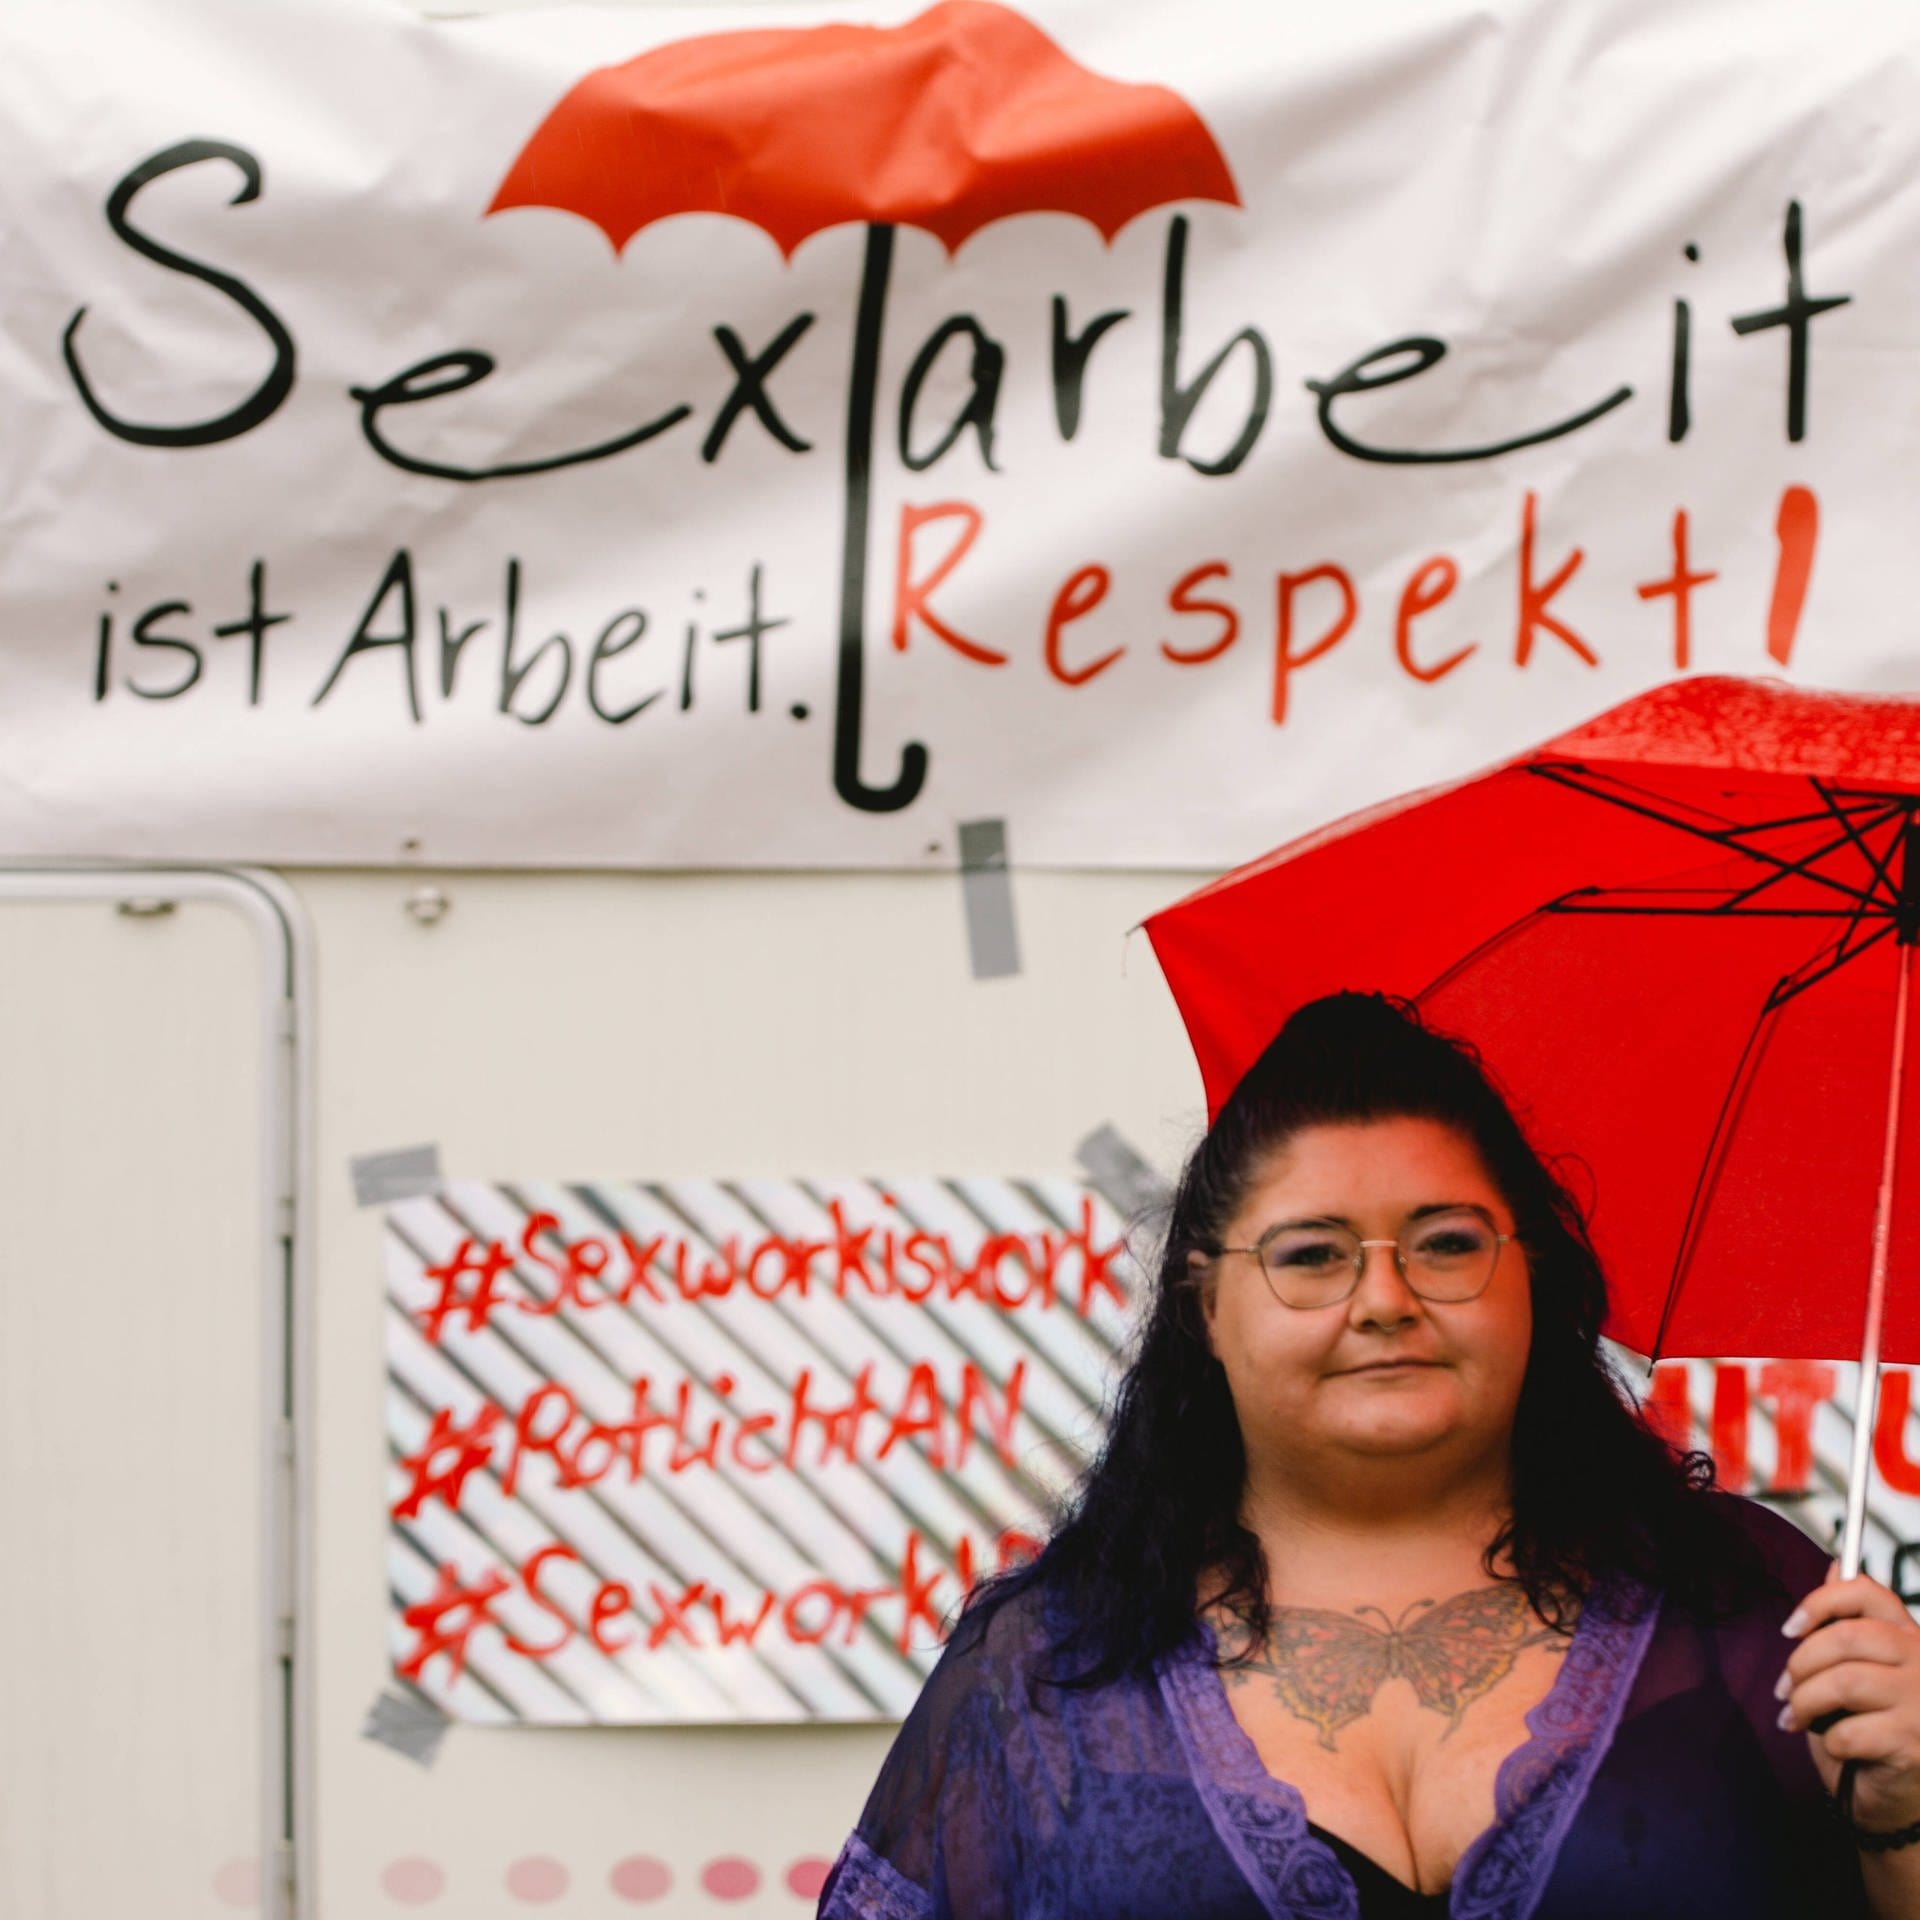 Sexkauf verbieten? – Der Streit um Prostitution in Deutschland